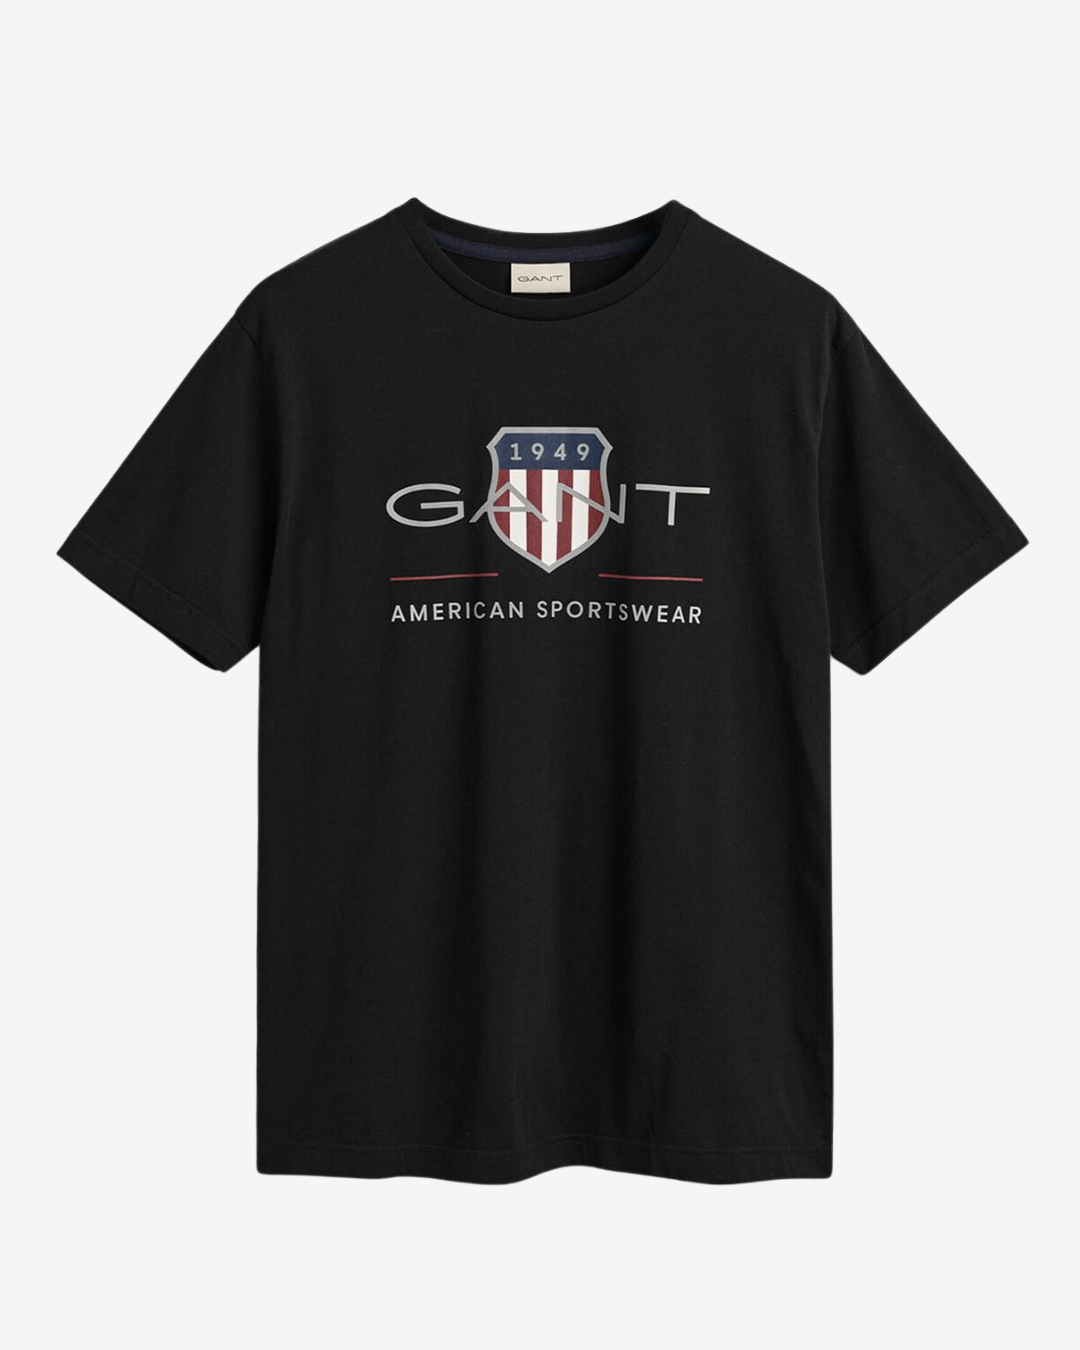 Se Gant Reg archive shield t-shirt - Sort - Str. M - Modish.dk hos Modish.dk